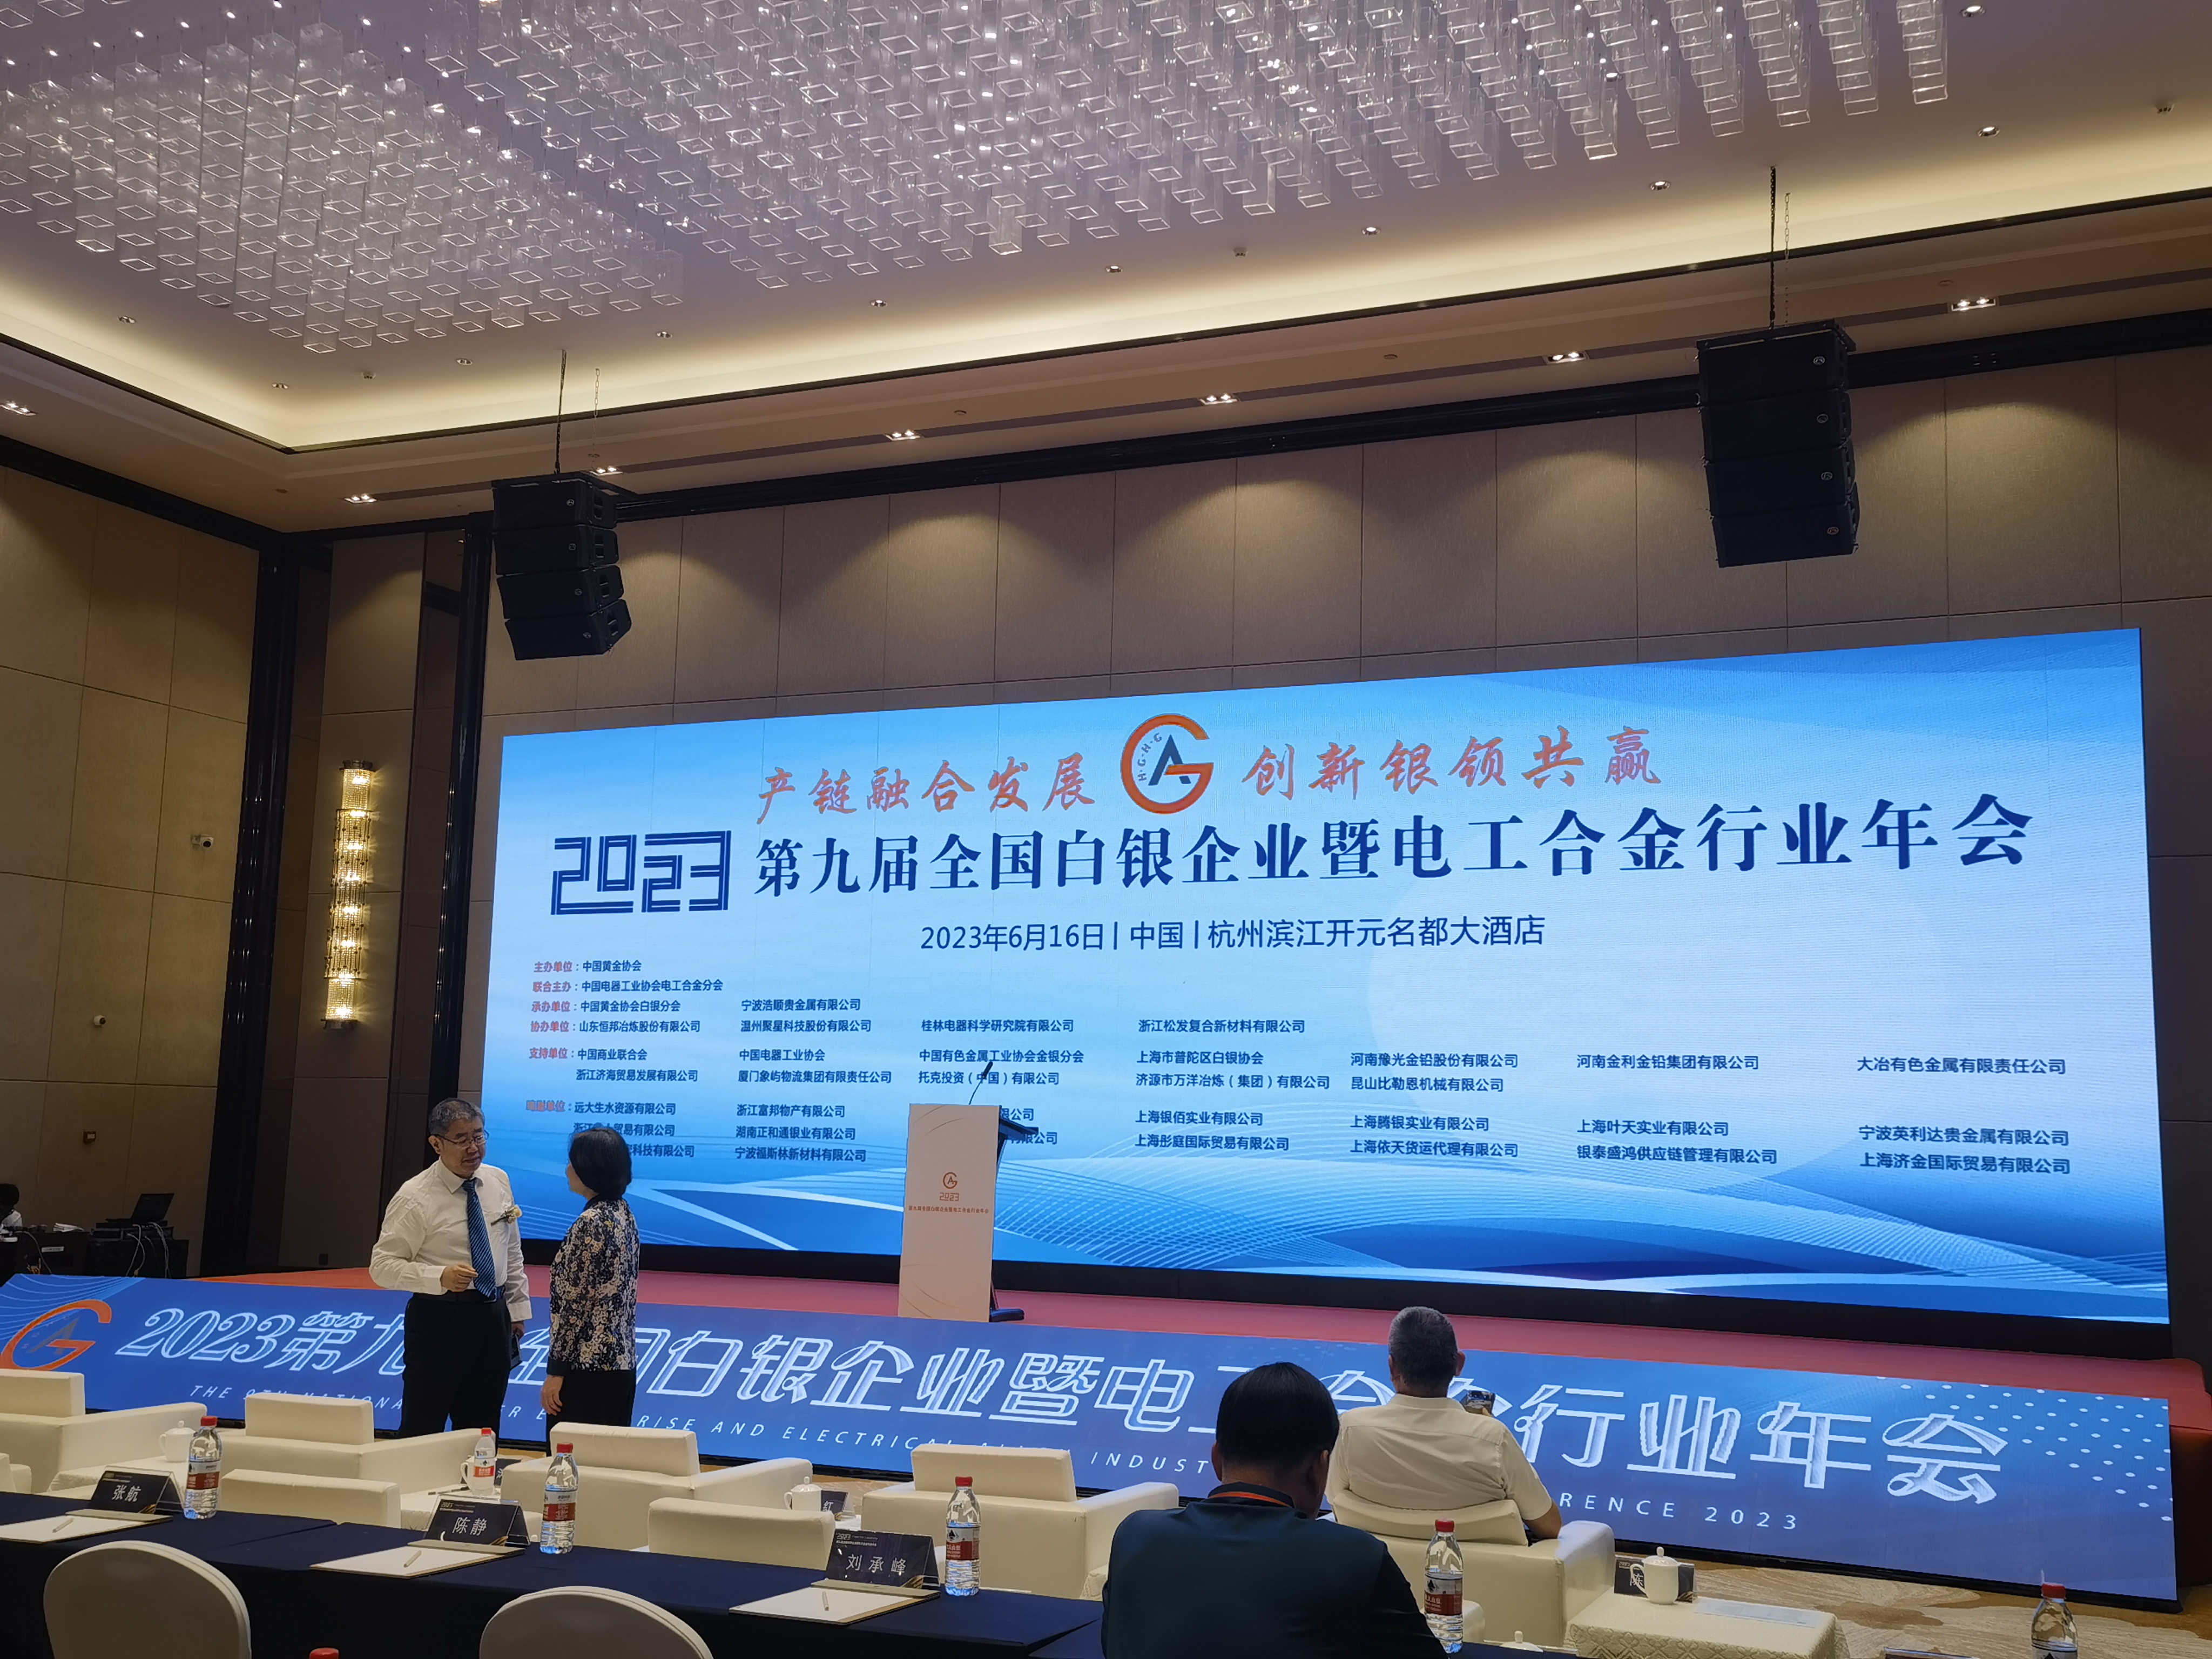 הכנס ה-9 של תעשיית הכסף והסגסוגות החשמליות בסין